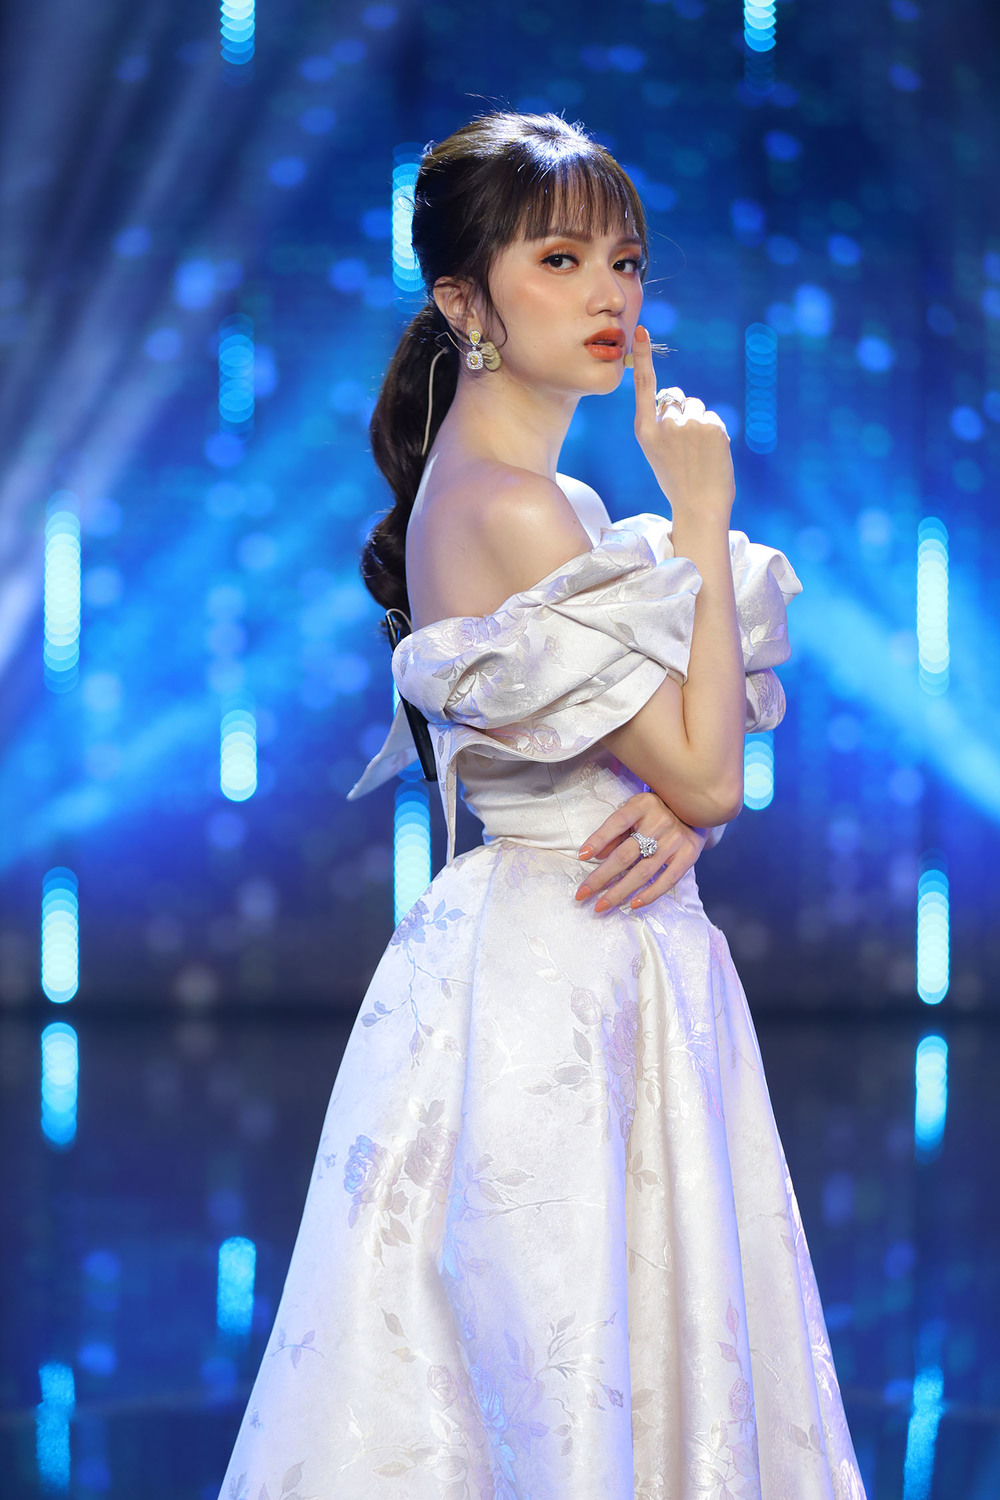  Trước đó, Hoa hậu Hương Giang cũng từng diện bộ váy này khi tham gia chương trình "Người ấy là ai" (Ảnh: FBNV). - Tin sao Viet - Tin tuc sao Viet - Scandal sao Viet - Tin tuc cua Sao - Tin cua Sao